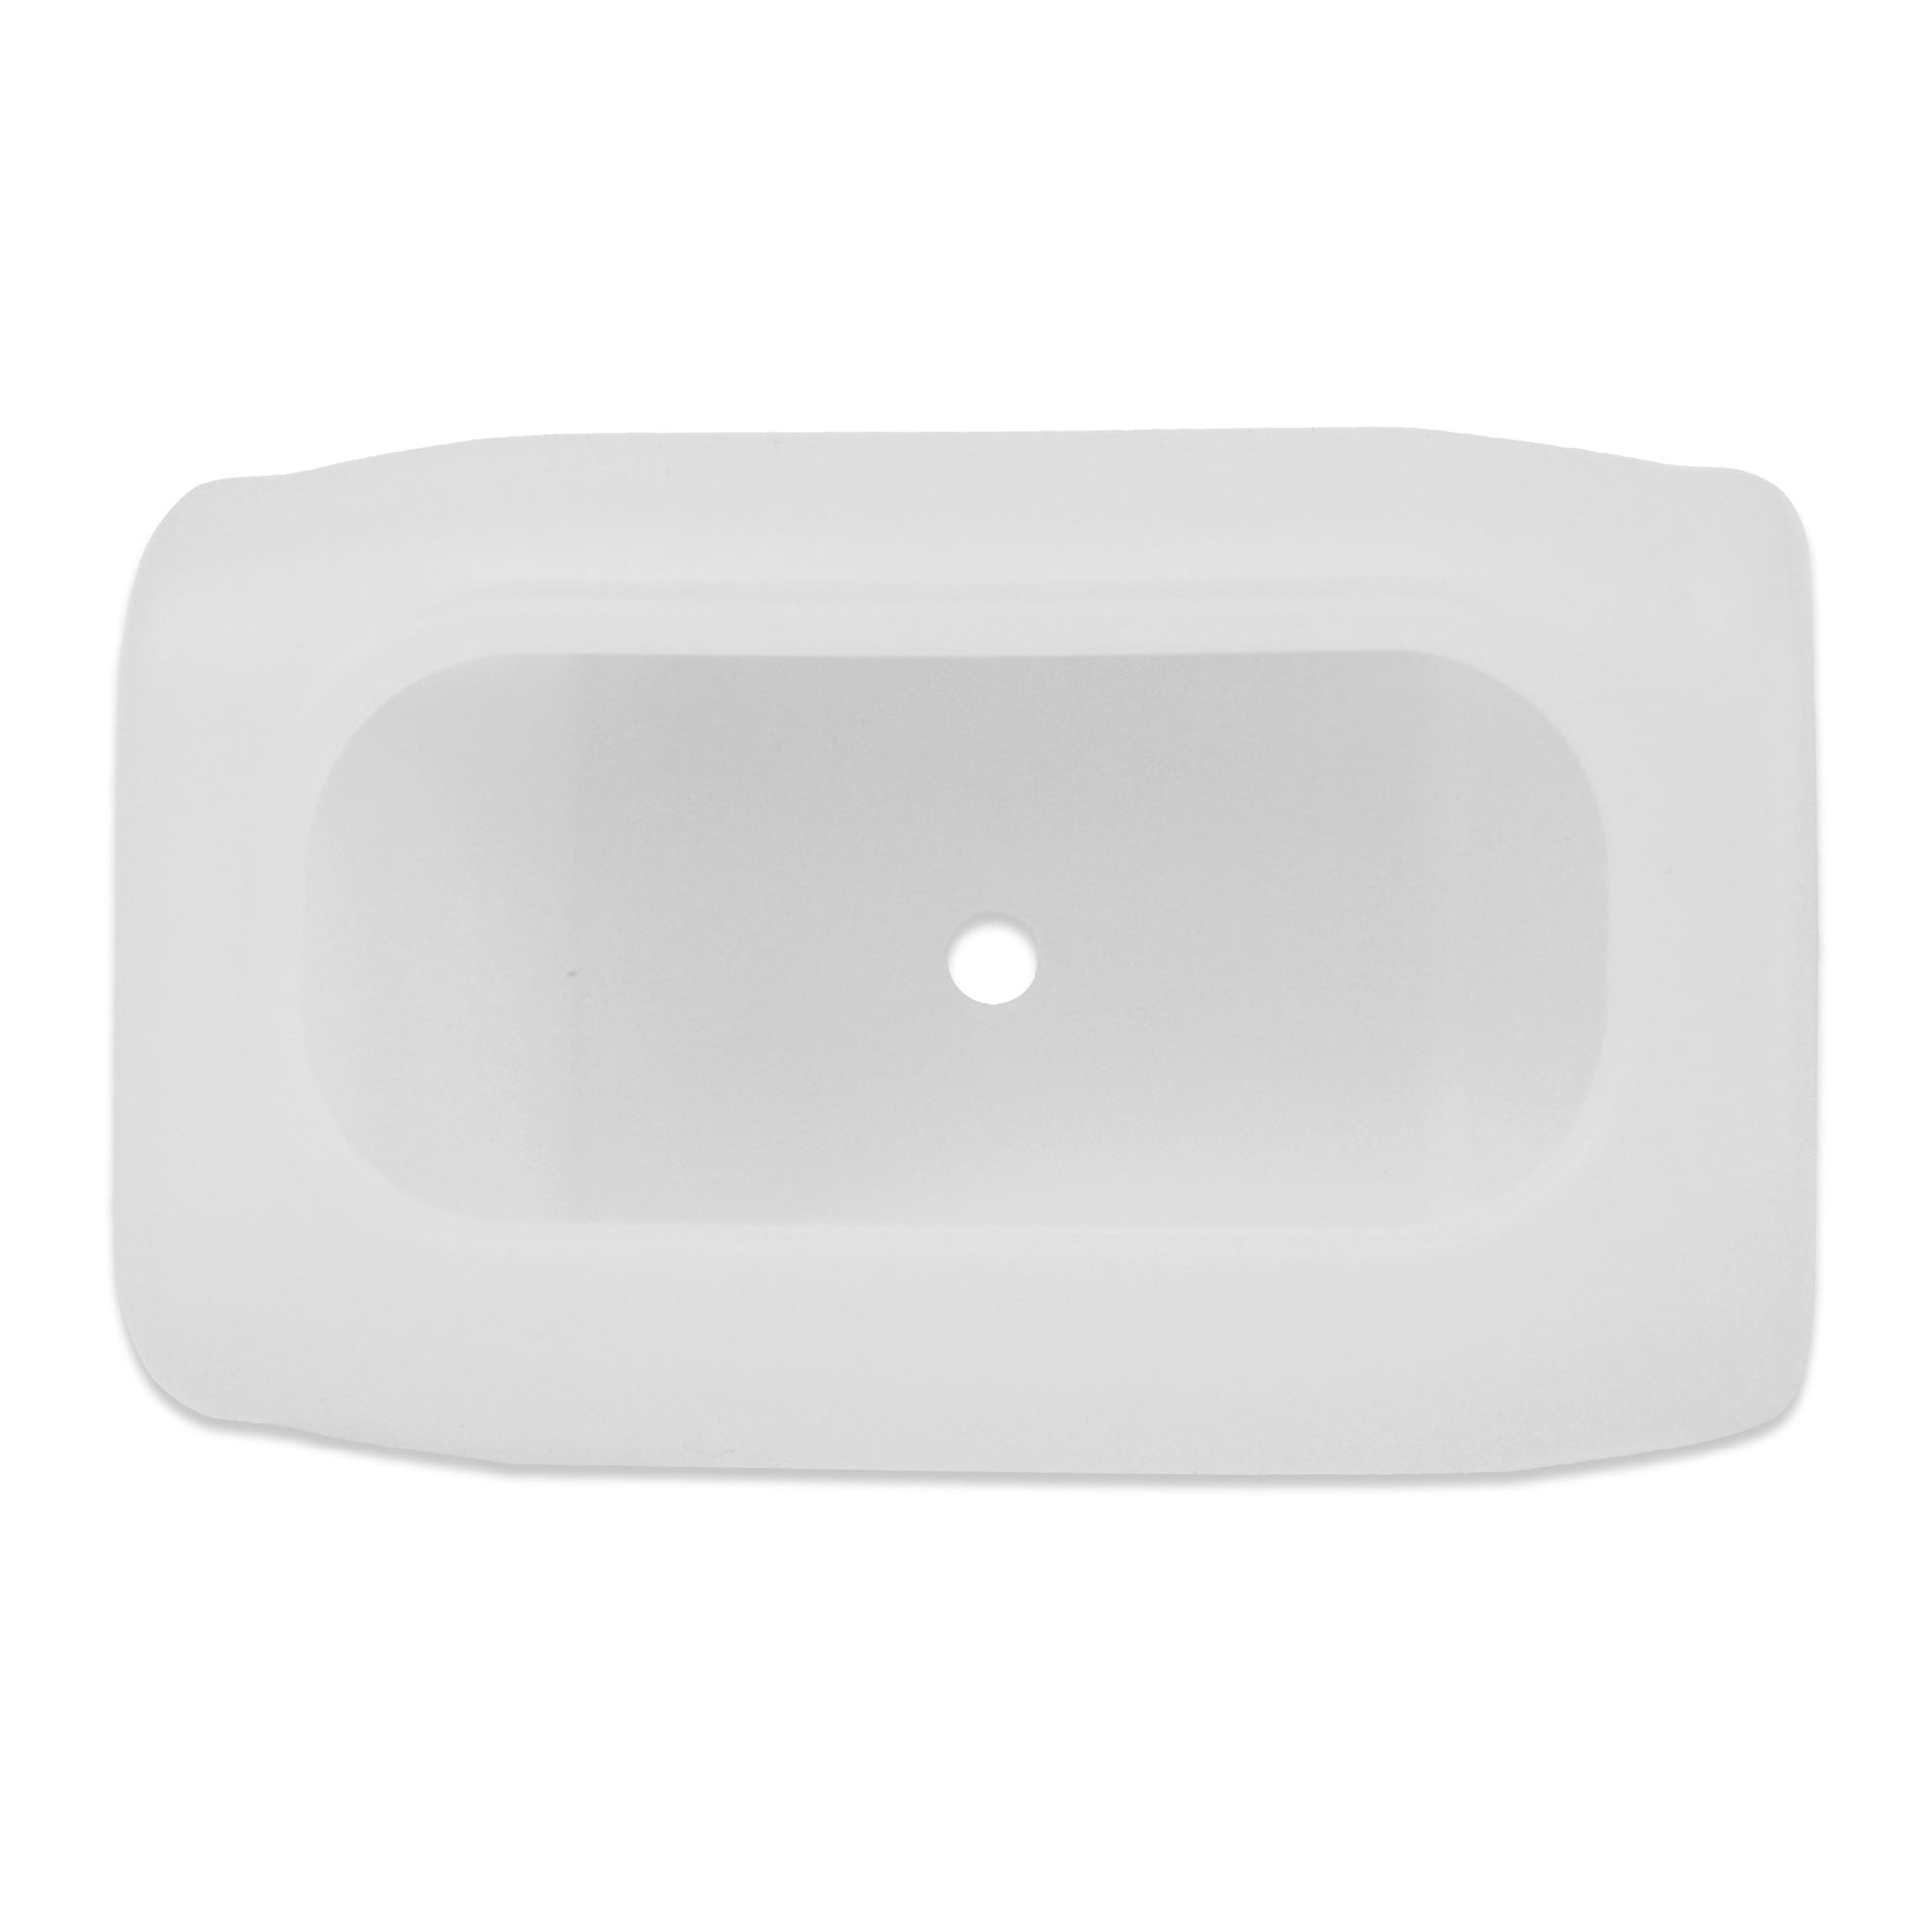 Une Coque de protection en silicone blanche avec un trou au milieu par Thermometre.fr.